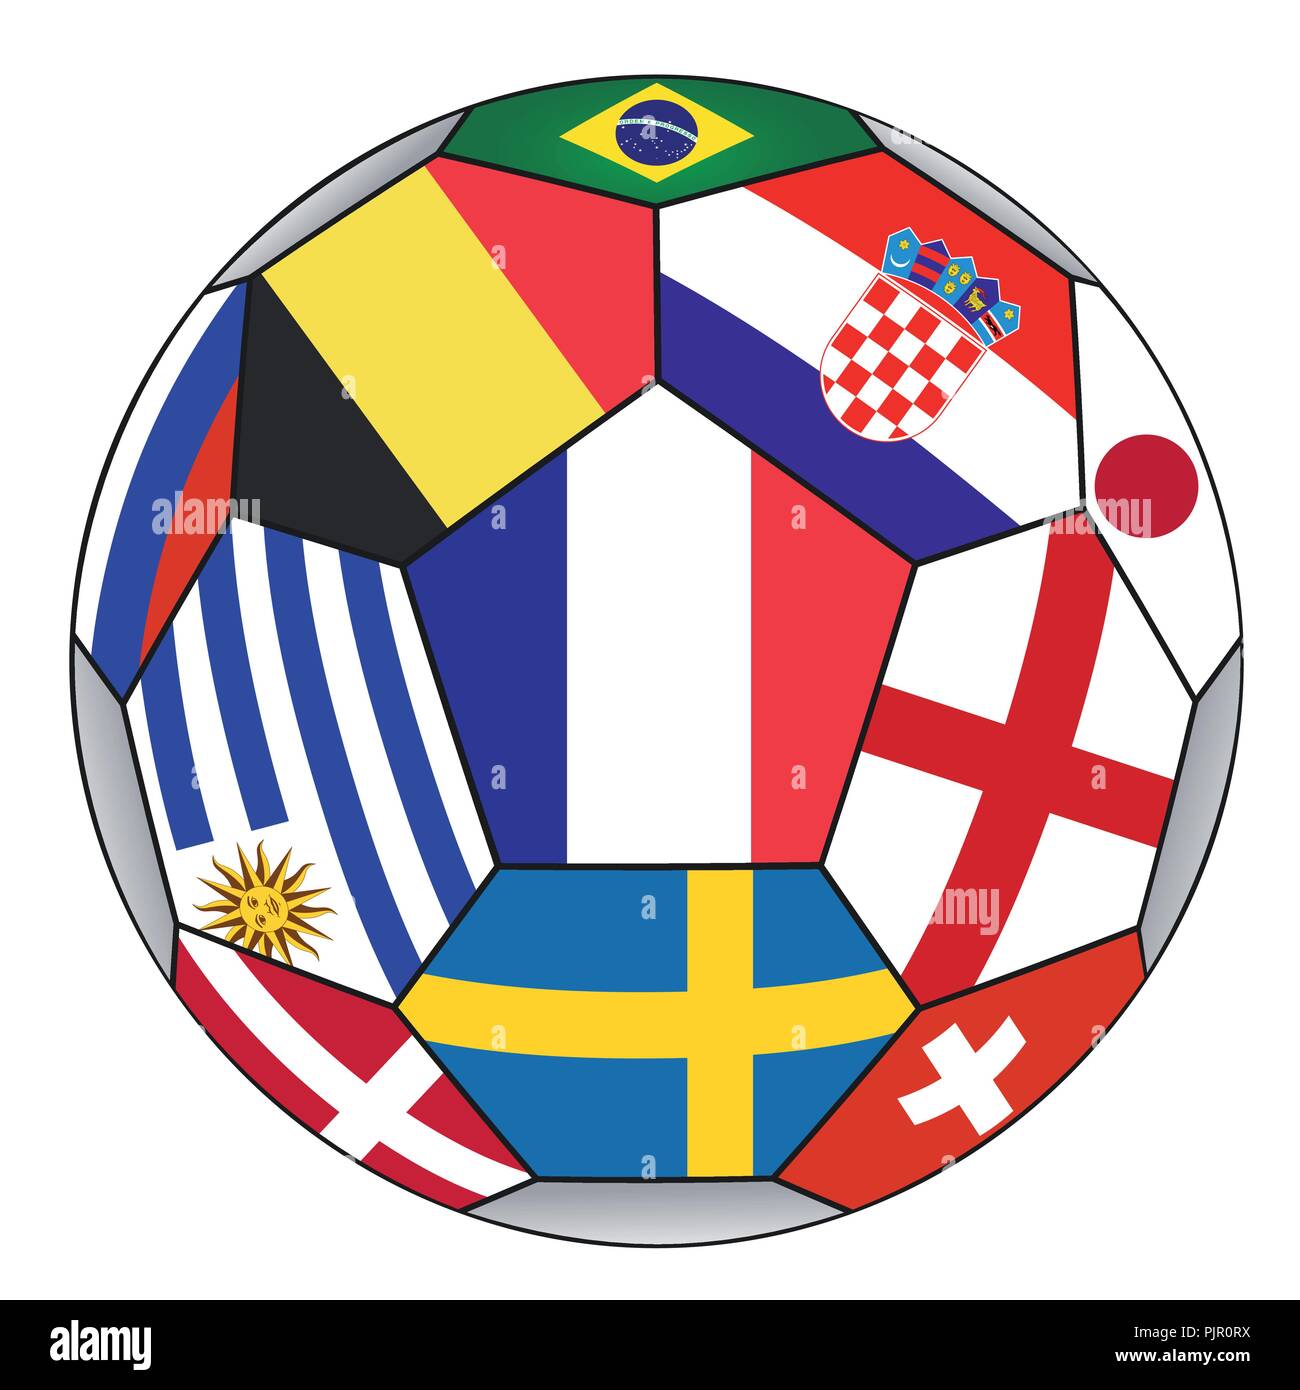 Pallone da calcio con vari flag isolato su sfondo bianco - campione del mondo - illustrazione vettoriale Illustrazione Vettoriale